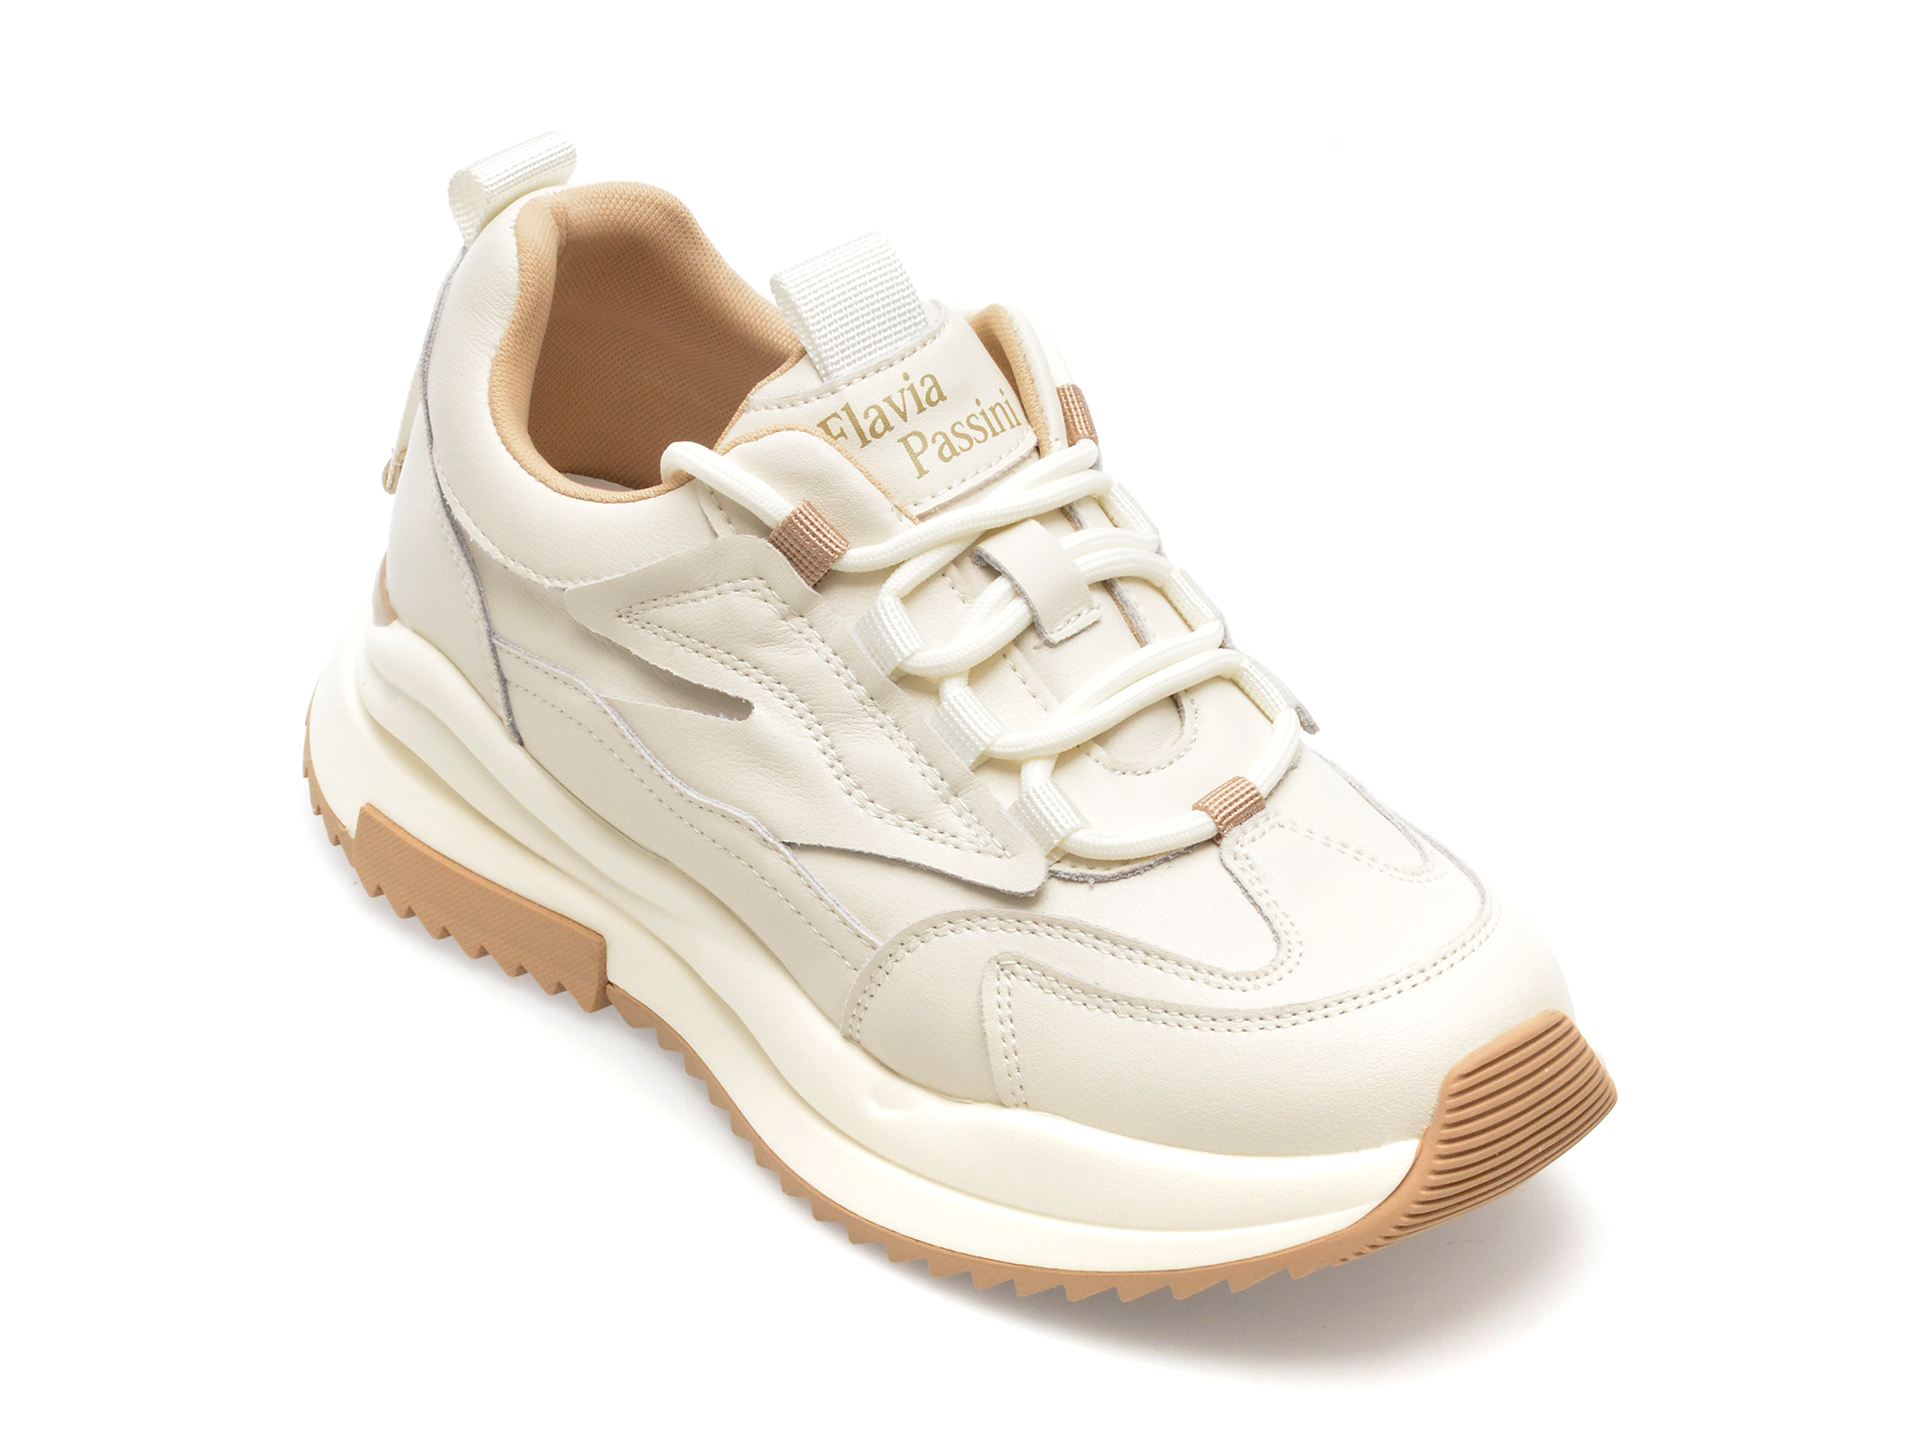 Pantofi FLAVIA PASSINI albi, 955A, din piele naturala